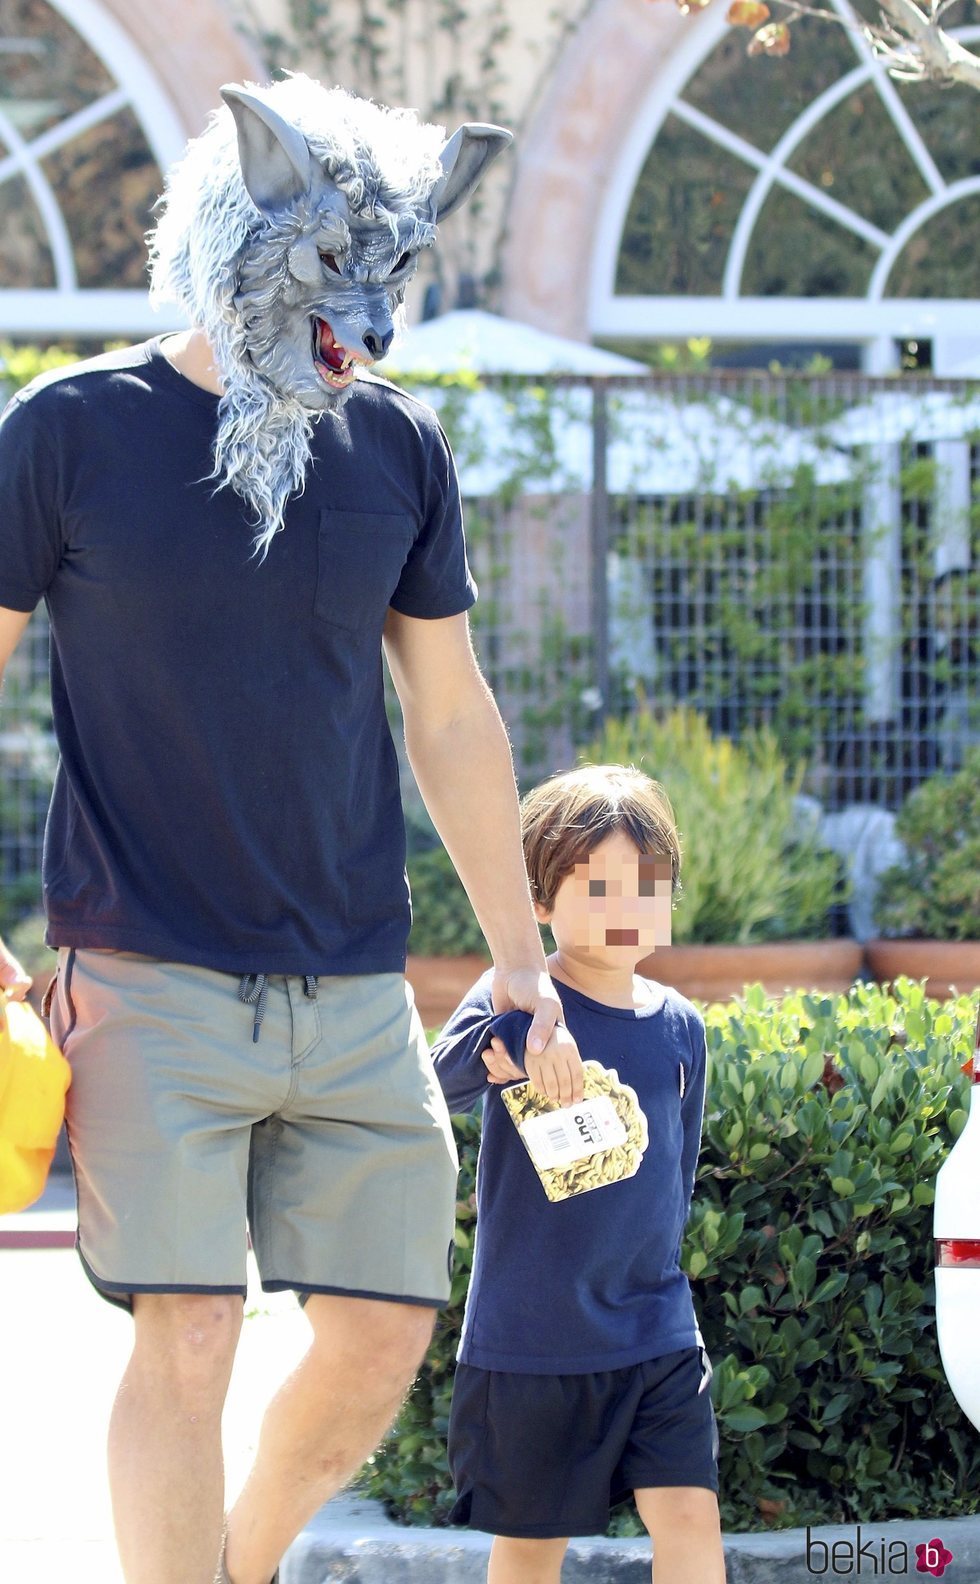 Orlando Bloom con una máscara de lobo paseando con su hijo Flynn